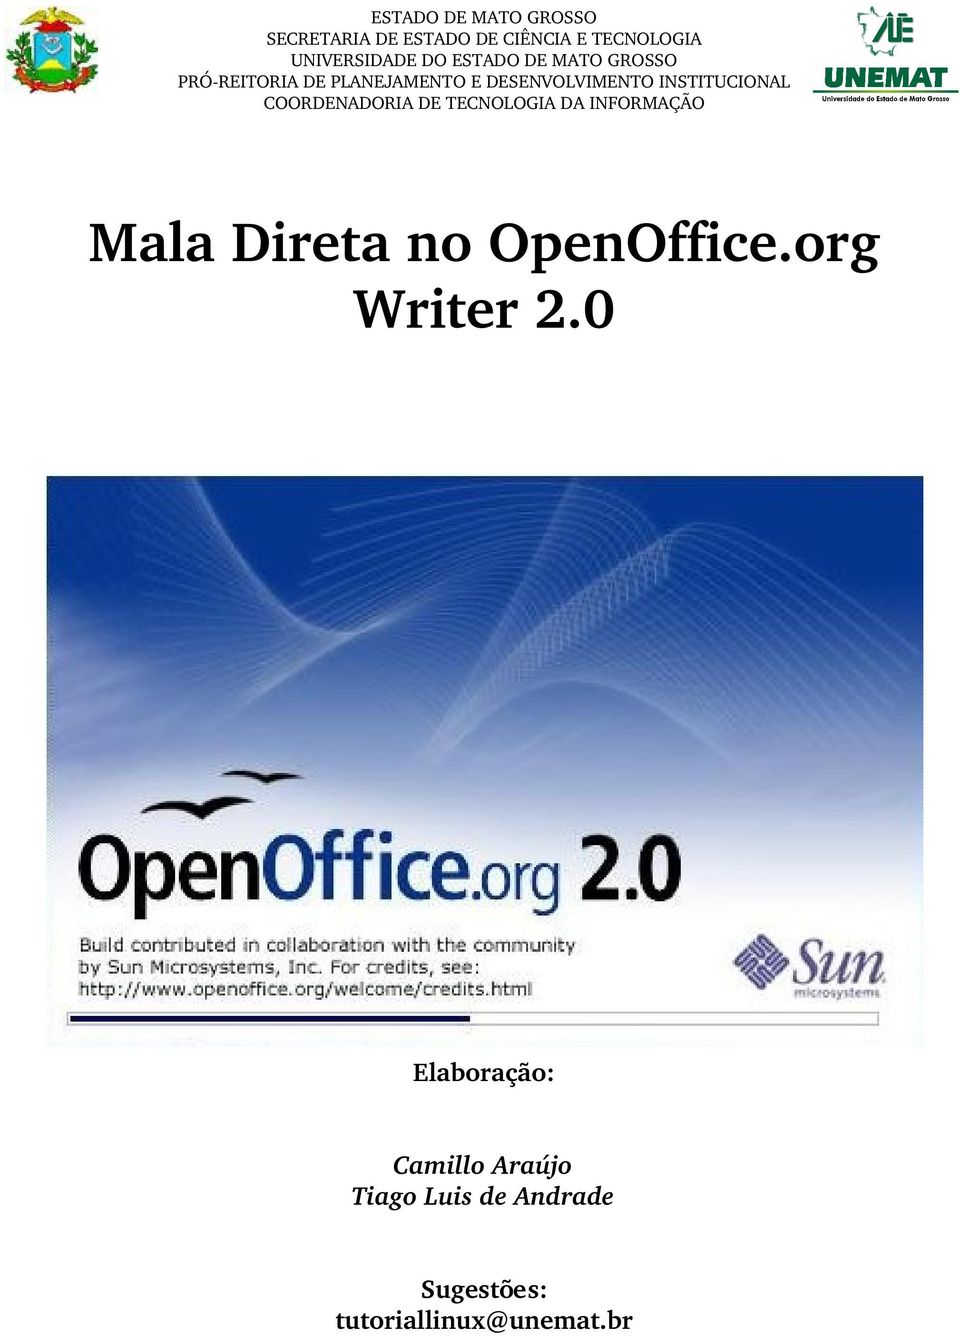 COORDENADORIA DE TECNOLOGIA DA INFORMAÇÃO Mala Direta no OpenOffice.org Writer 2.